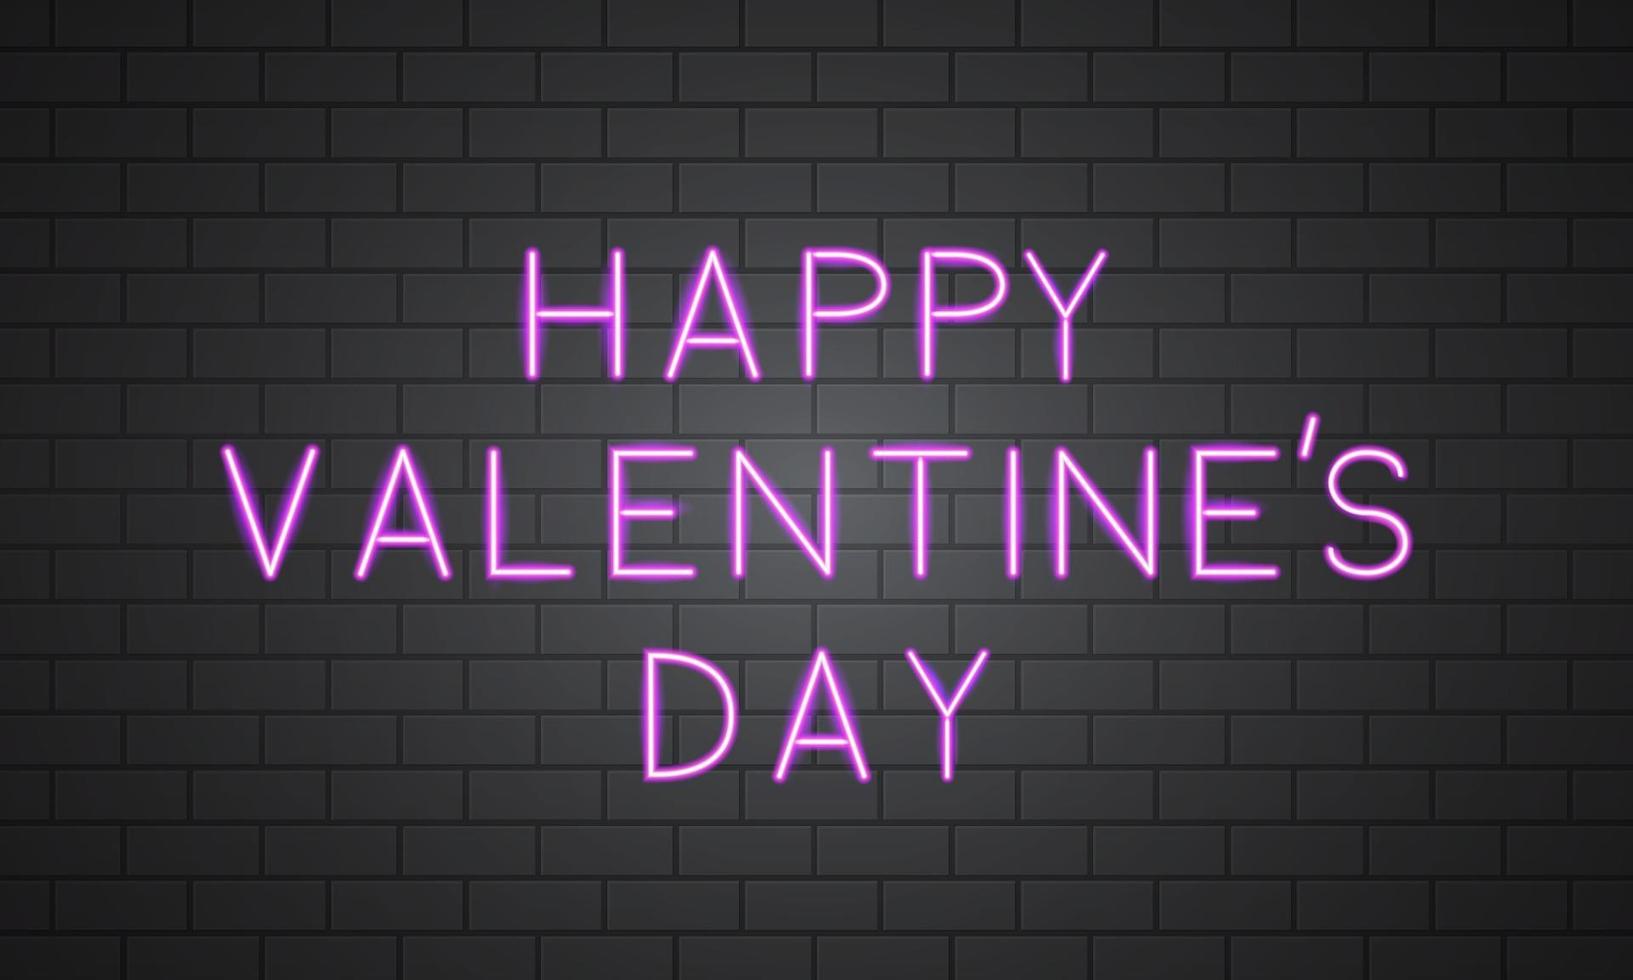 Happy Valentine s day bannière néon 3d sur mur de briques. signe rétro avec texte brillant rose vif dessus. modèle vectoriel facile à modifier pour la carte de voeux de la Saint-Valentin, l'invitation à une fête, le dépliant, l'affiche, etc.